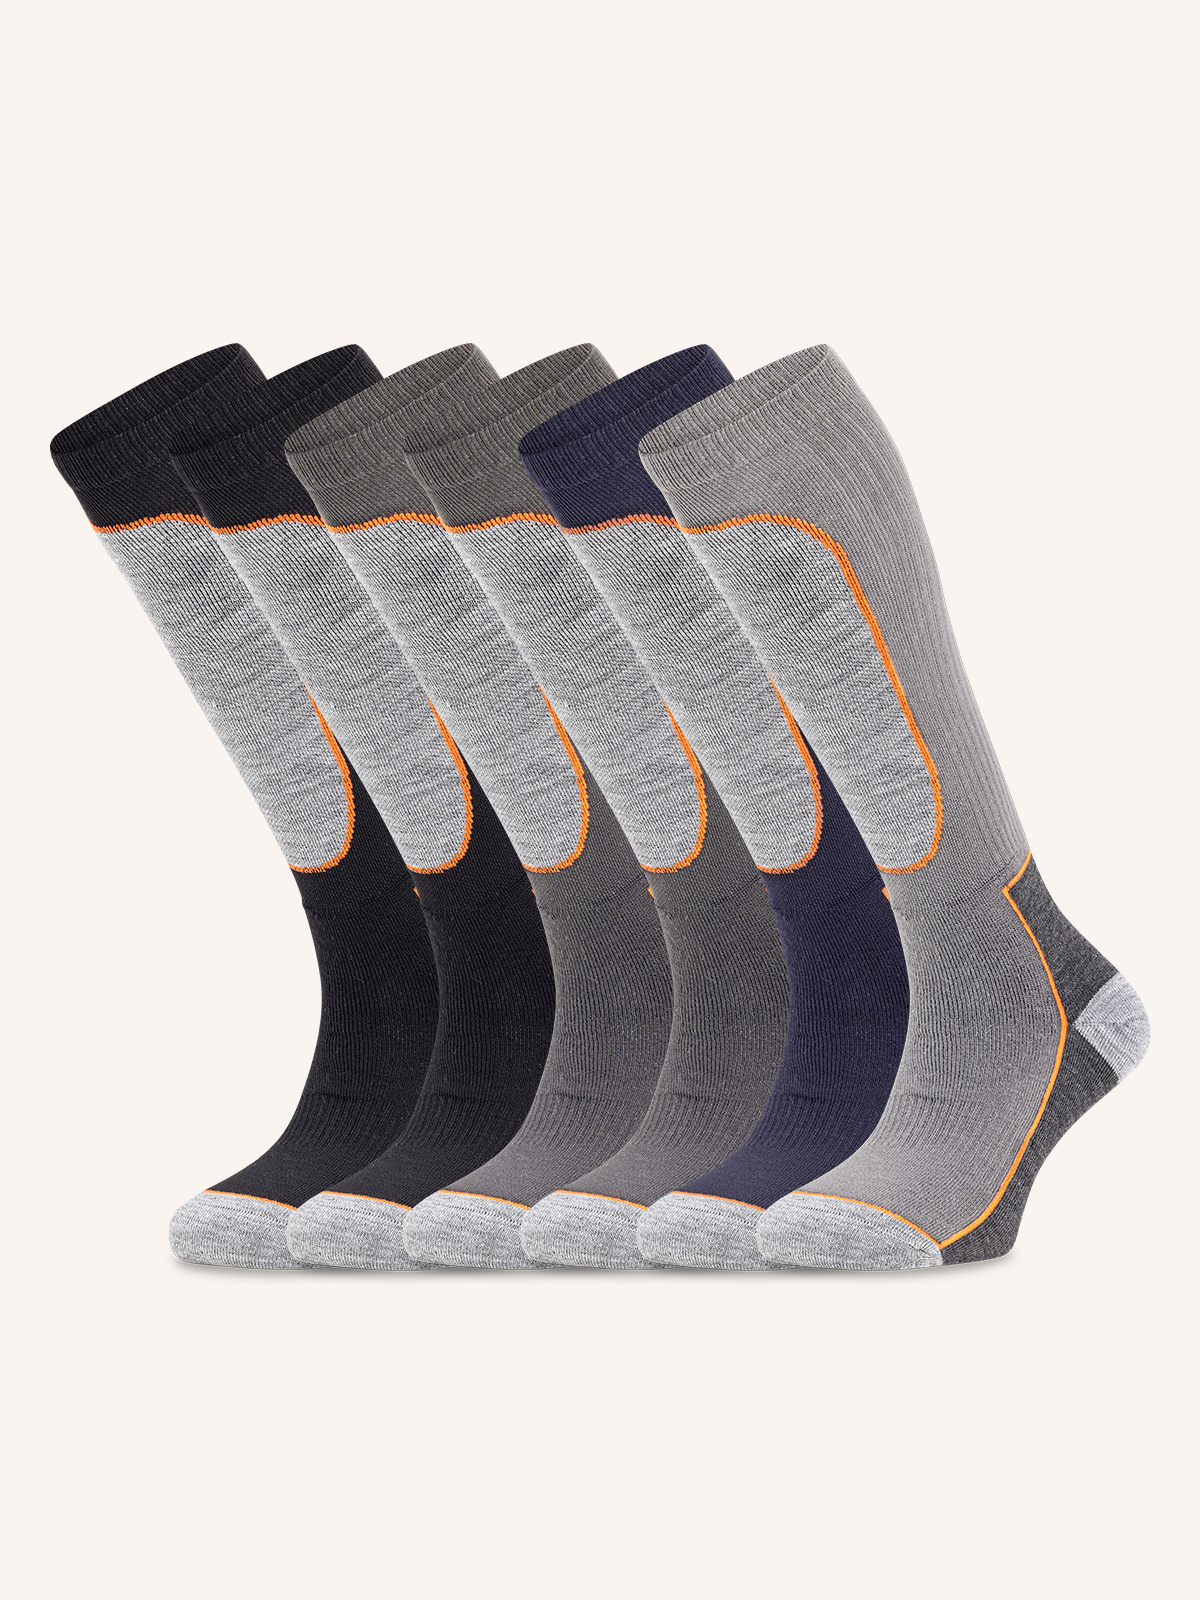 Long Work Sock for Men | Plain Color | Pack of 6 Pairs | JOB 04